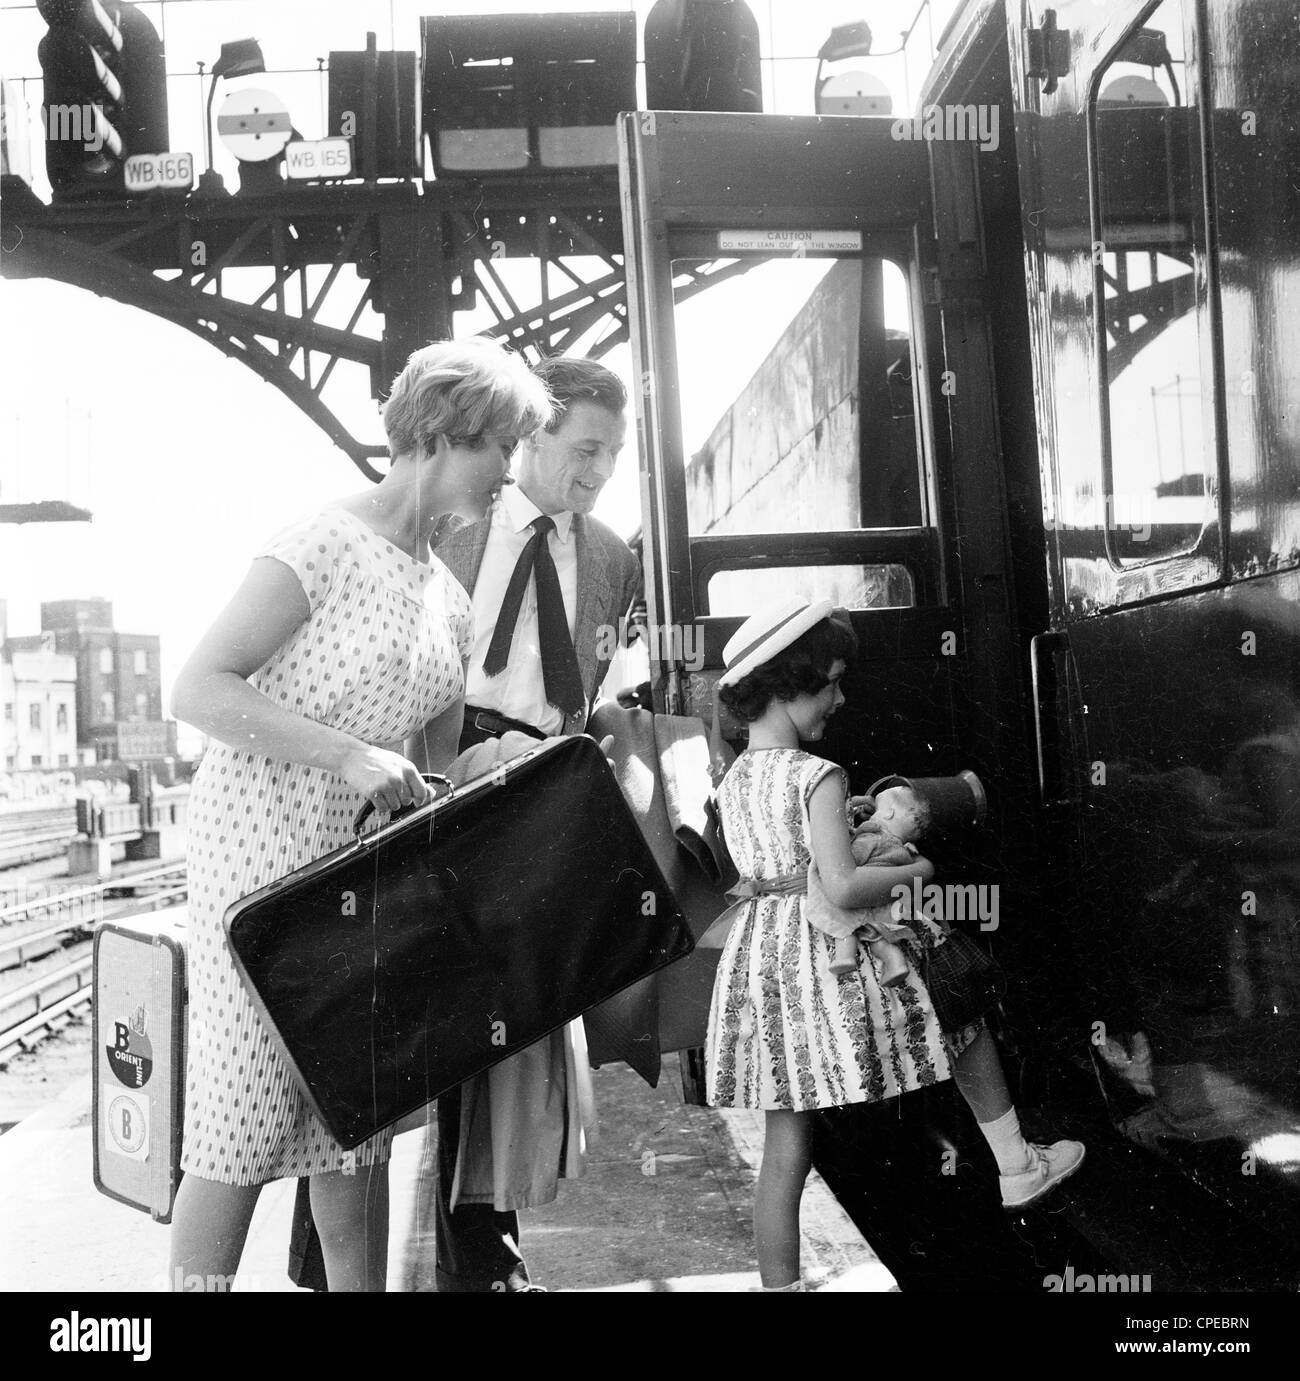 Der 1960er Jahre. Foto, Familie, Mann. Frau und Kind, mit Gepäck an einem Bahnsteig an Bord eines Zuges. Stockfoto